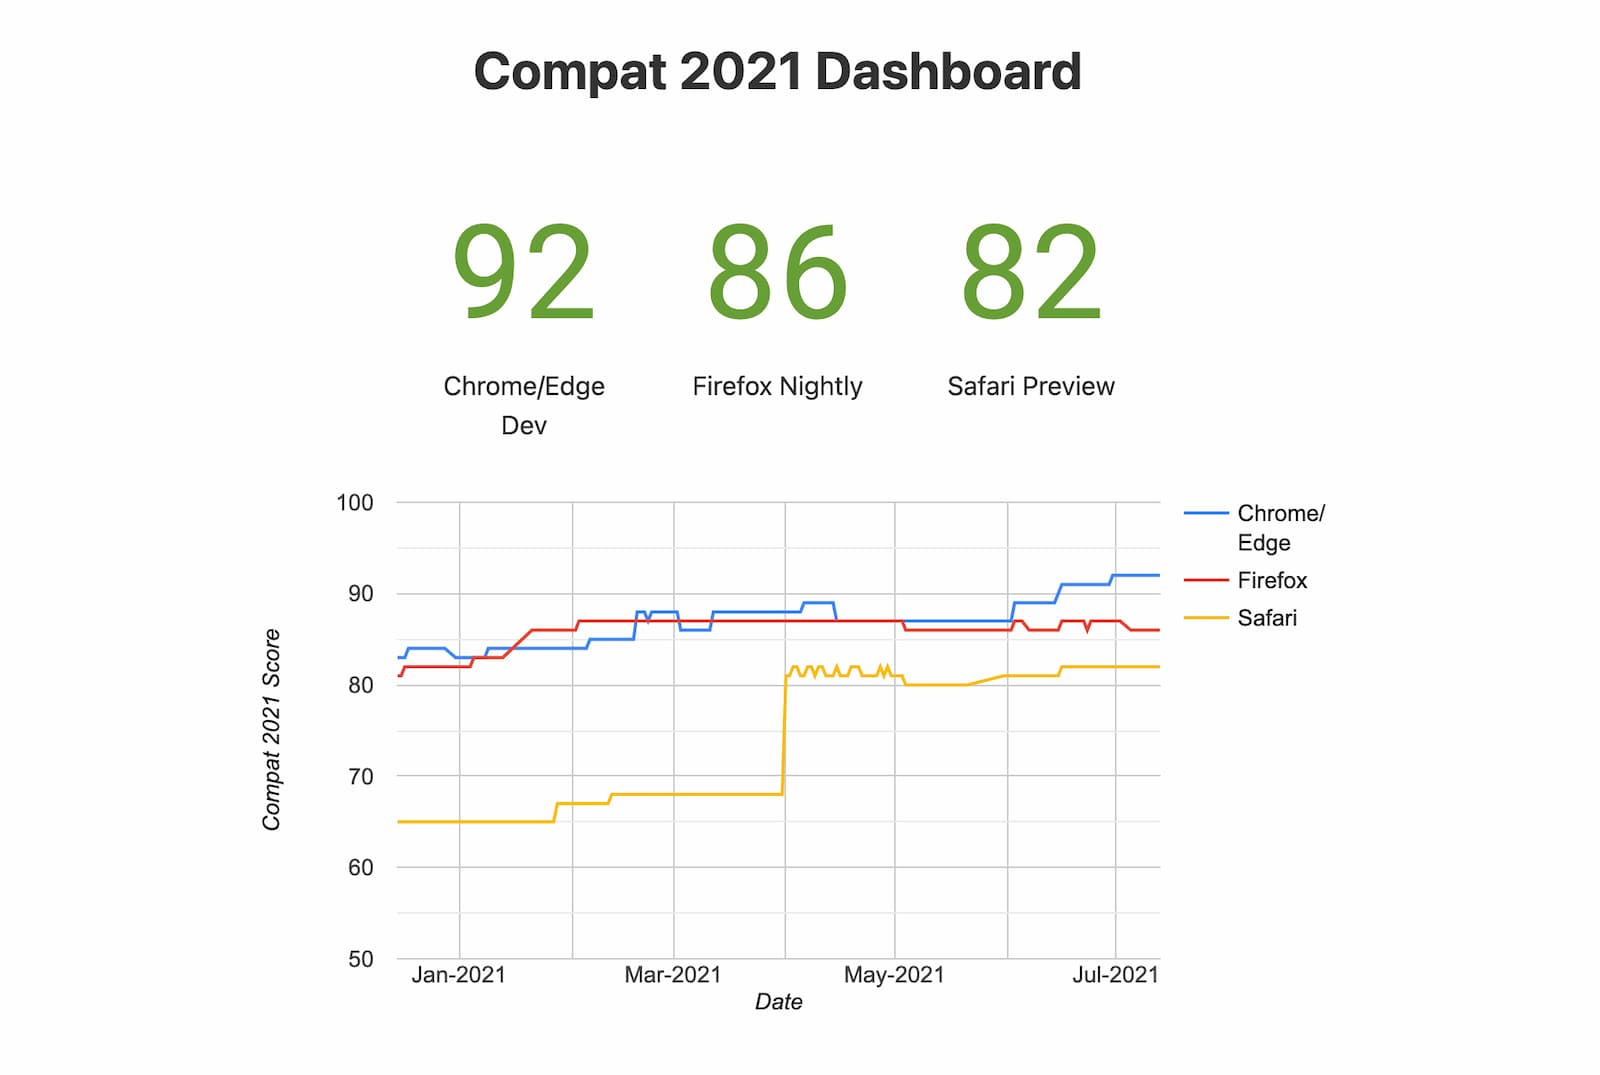 說明文字：Compat 2021 資訊主頁數據匯報 (實驗性瀏覽器)